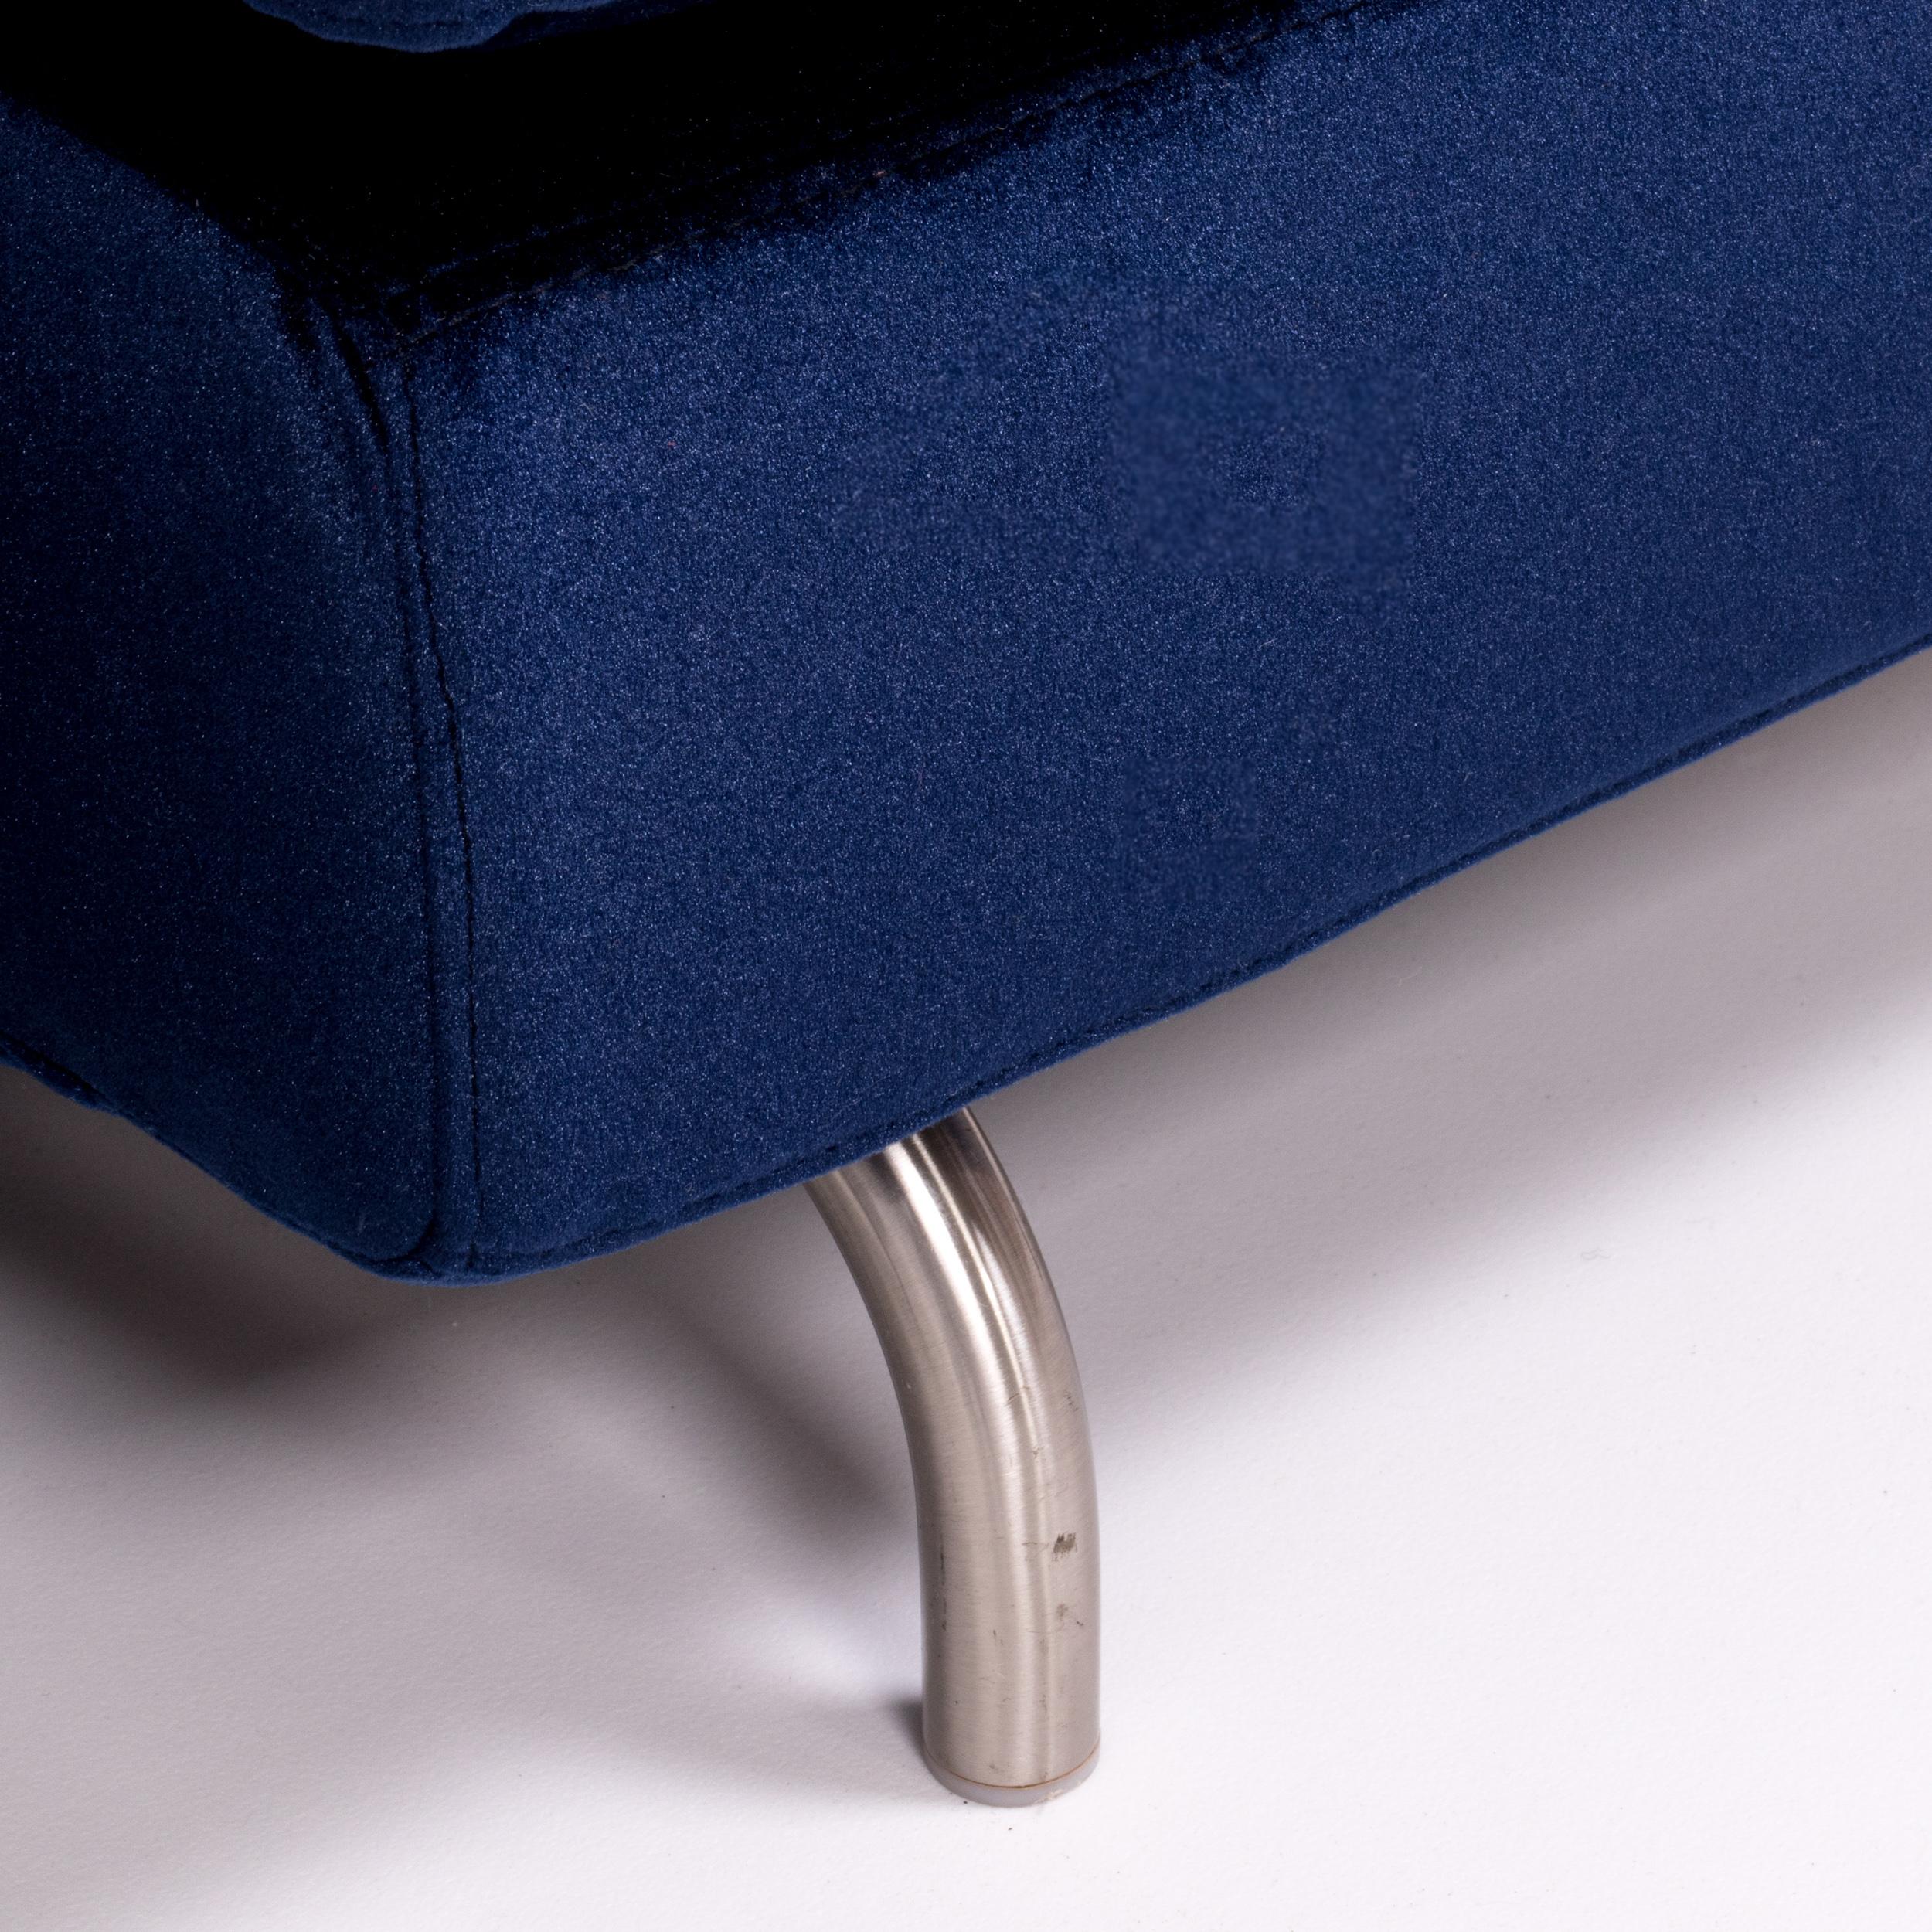 Minotti by Rodolfo Dordoni Dubuffet Navy Blue Lounge Chairs, Set of 2 4